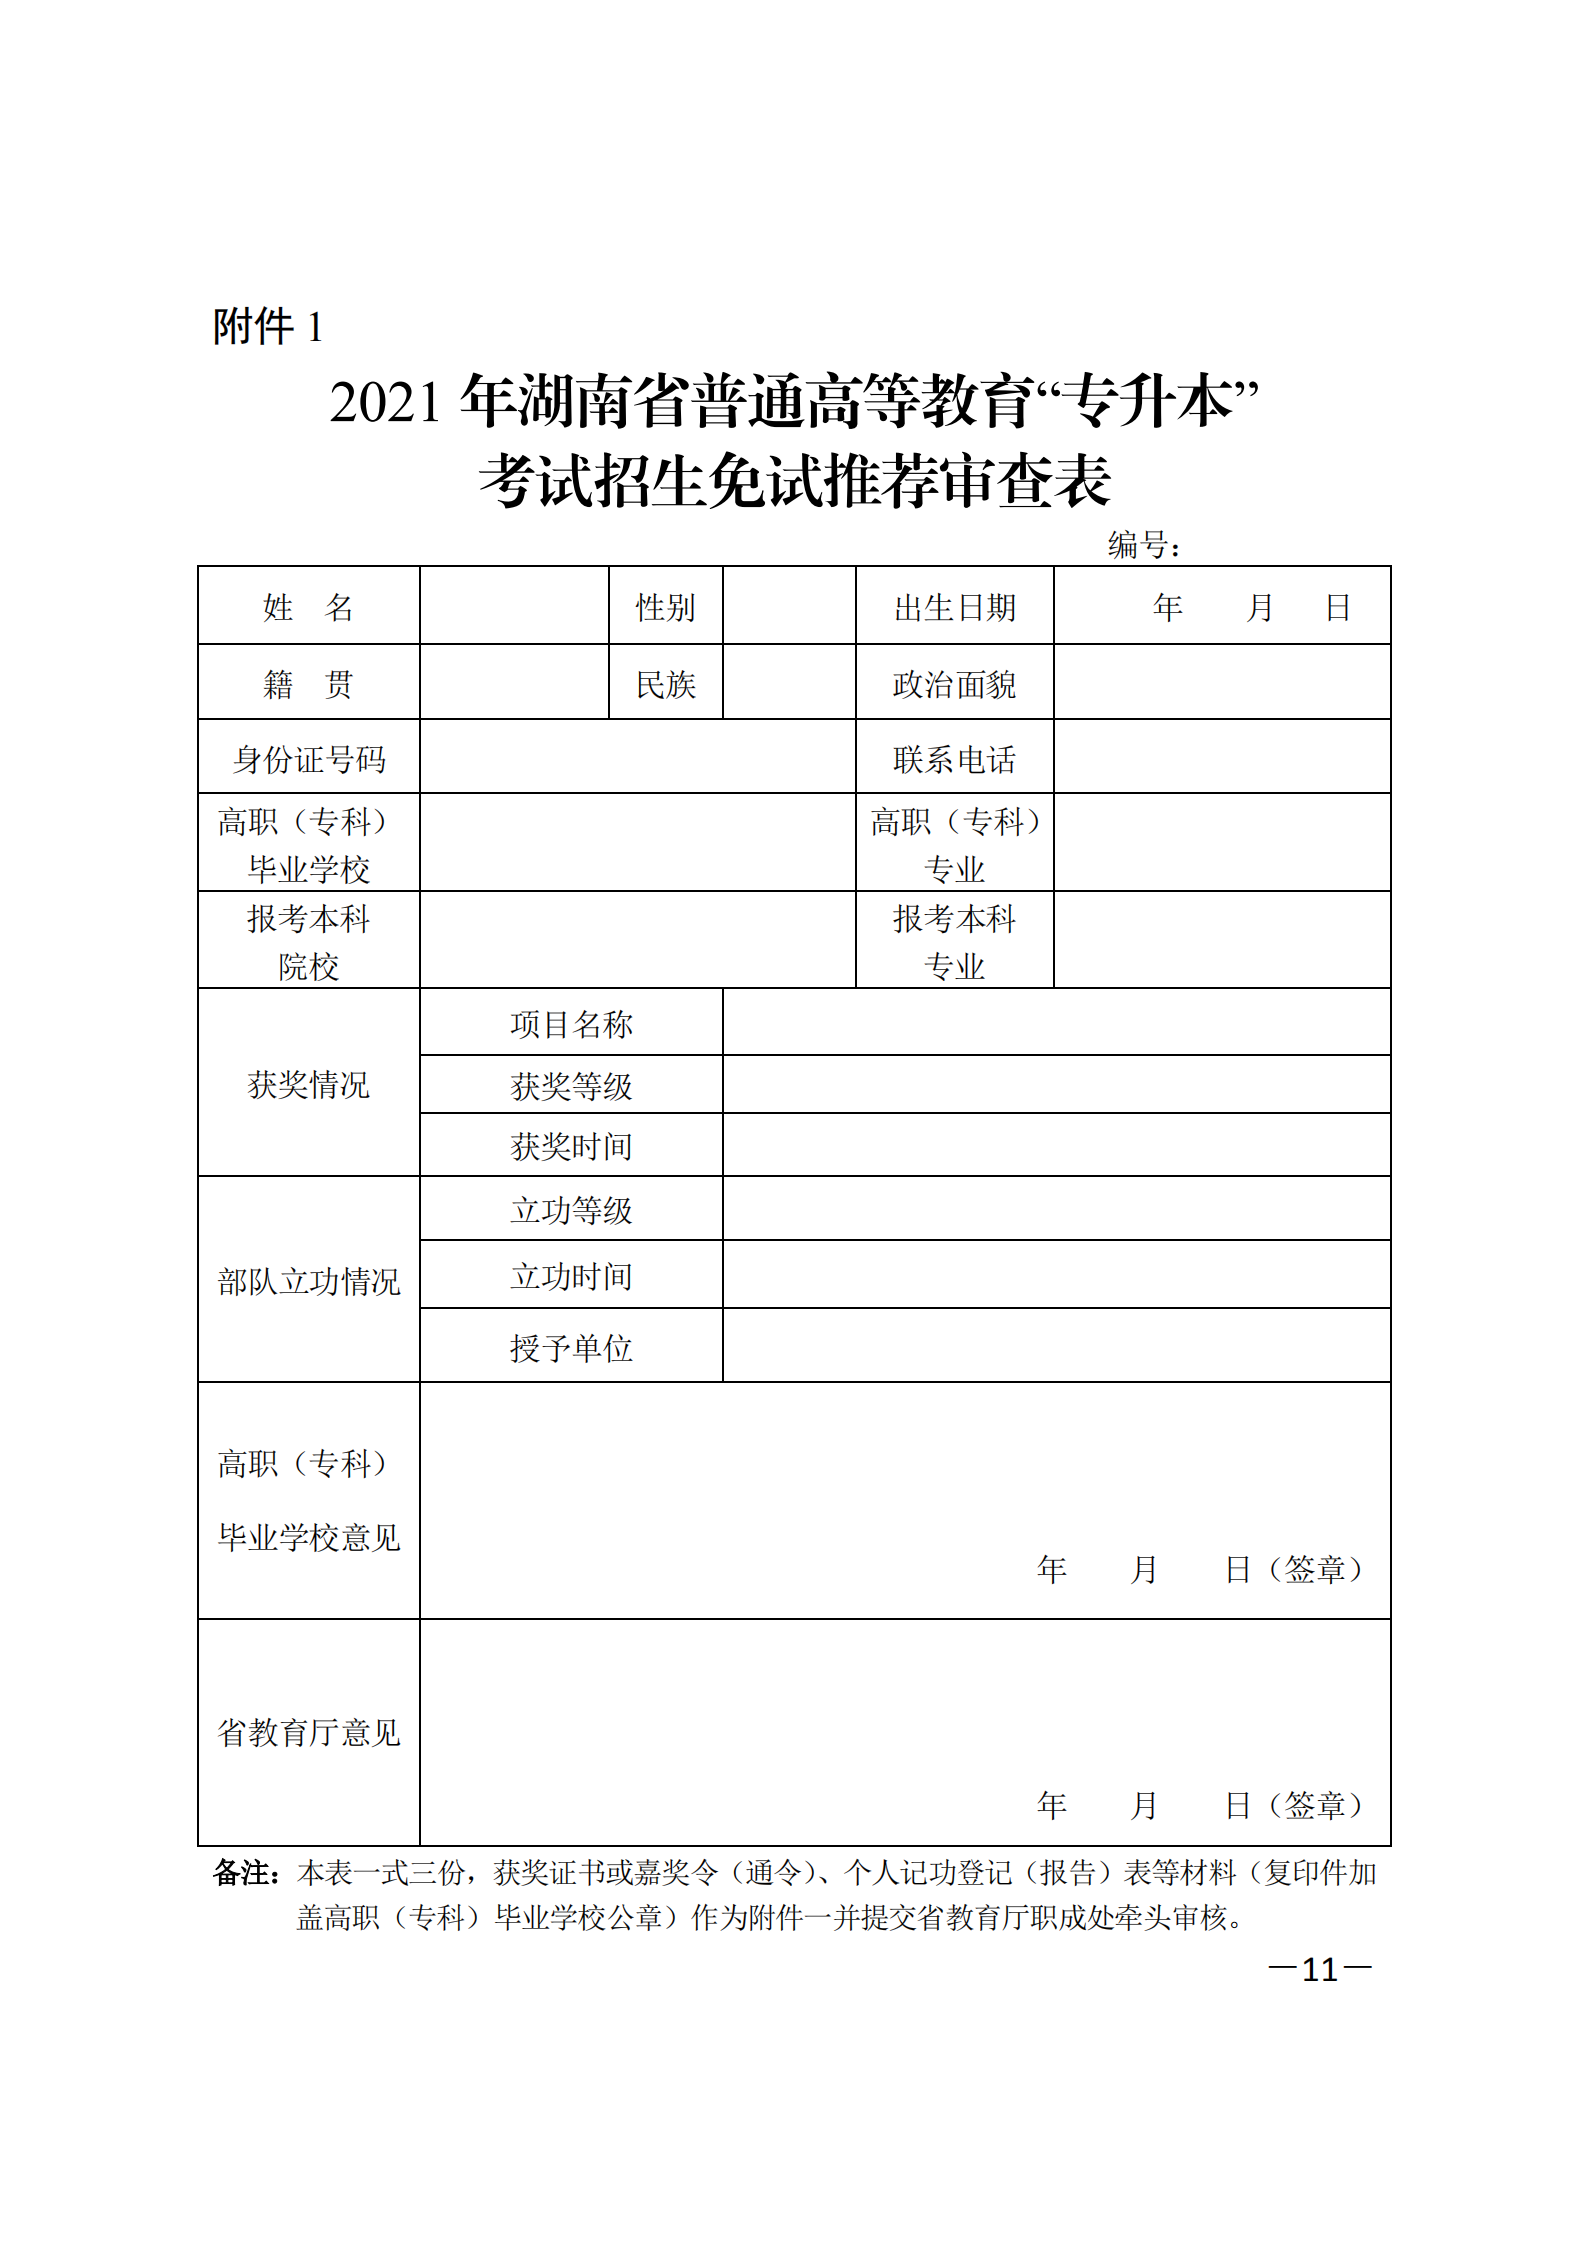 3_湘教发〔2021〕2号 关于印发《2021年湖南省普通高等教育“专升本”考试招生工作实施方案》的通知_10.png